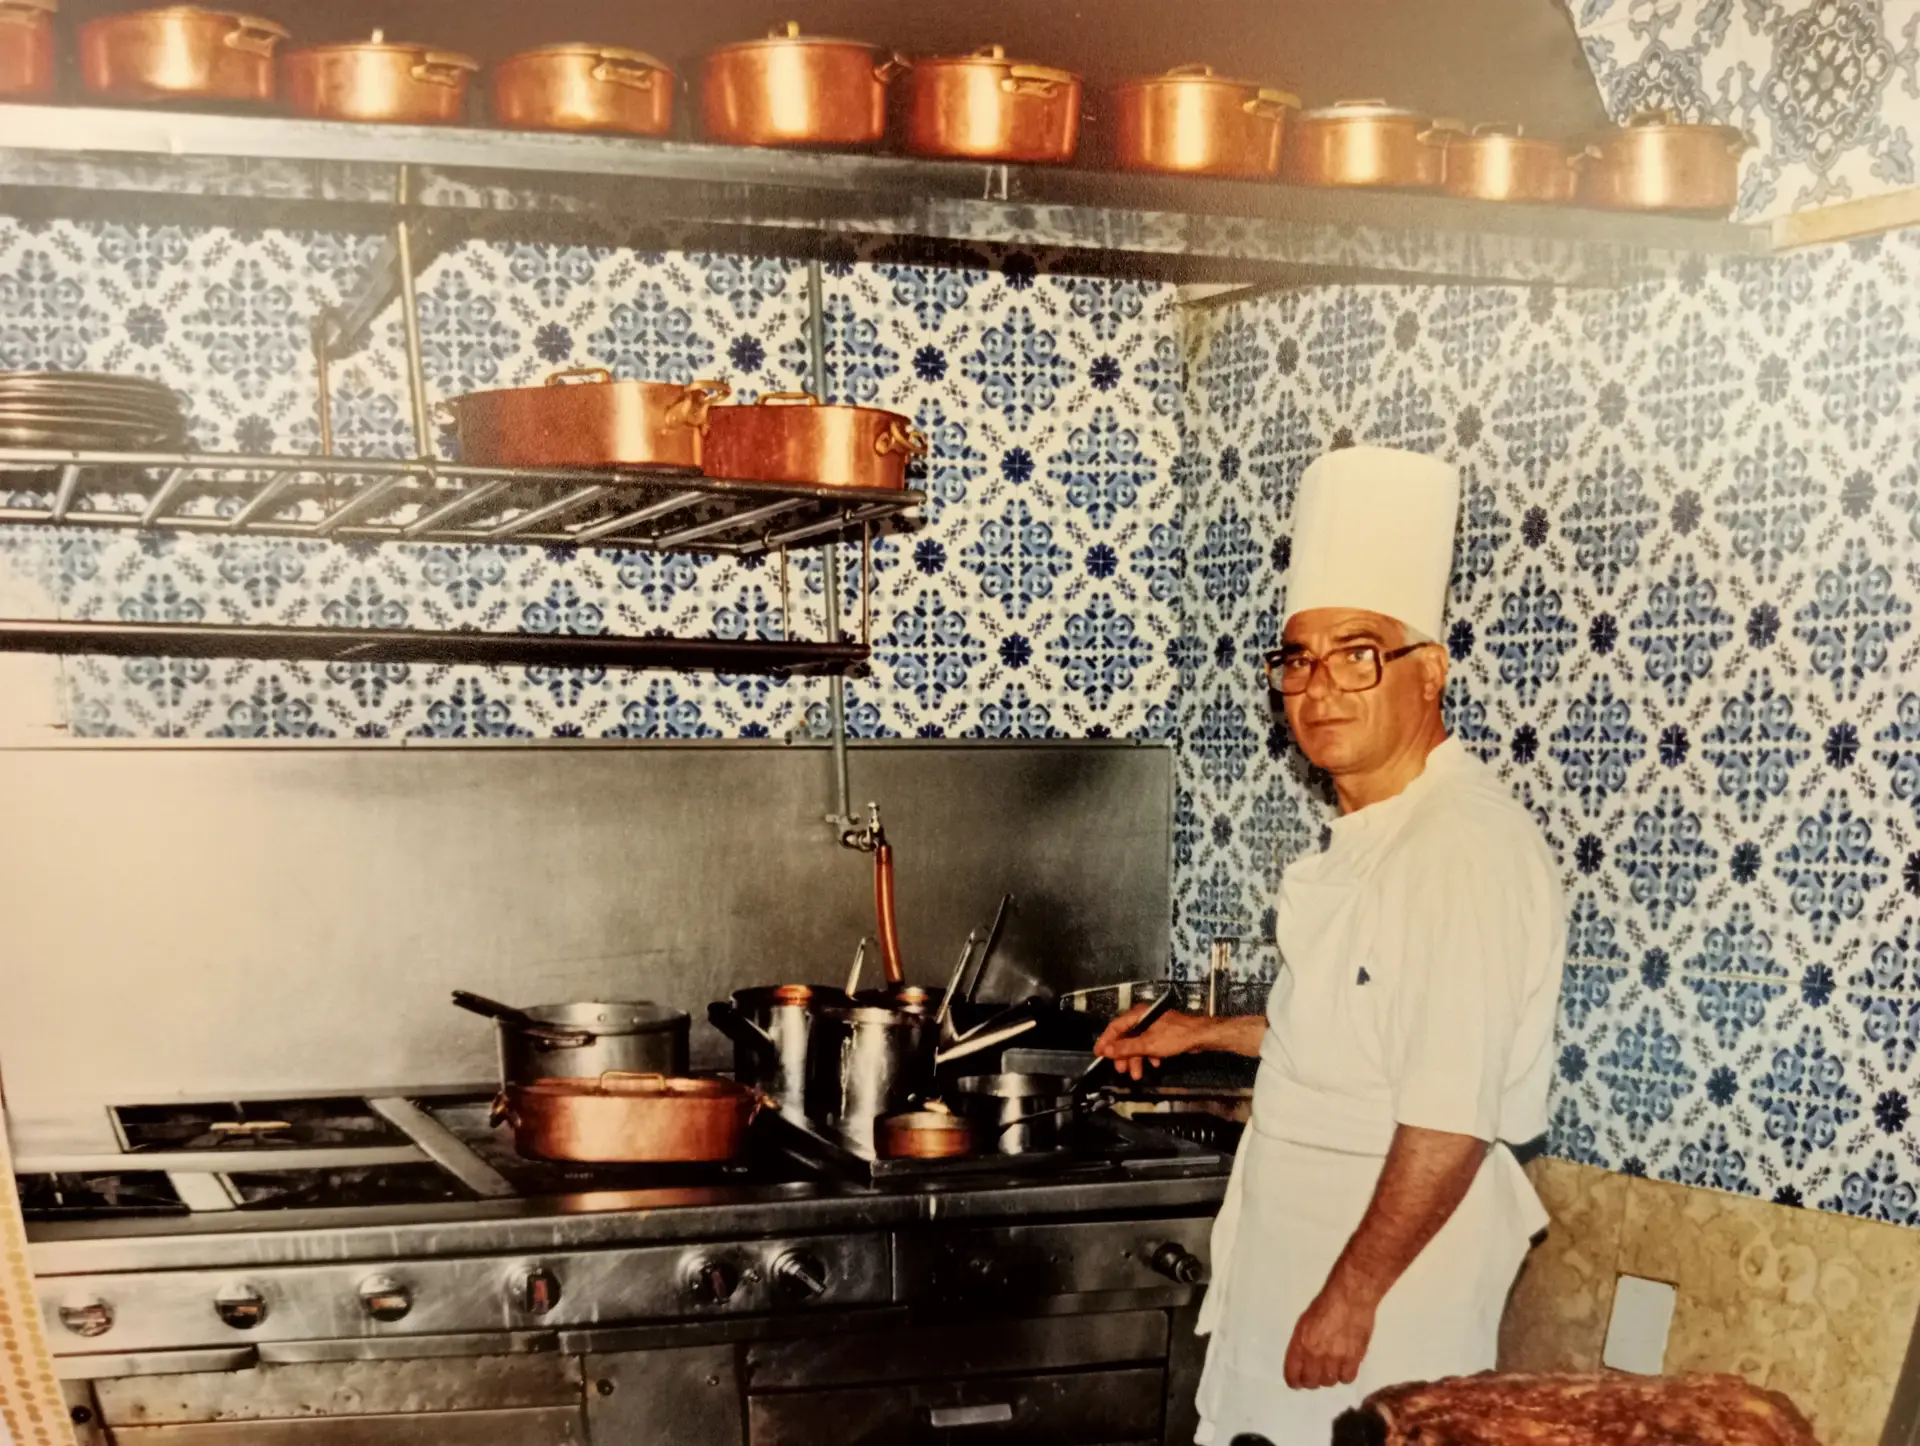 O chef Rocha na cozinha, ainda com azulejos na parede, tachos em cobre e o fogão feito à medida